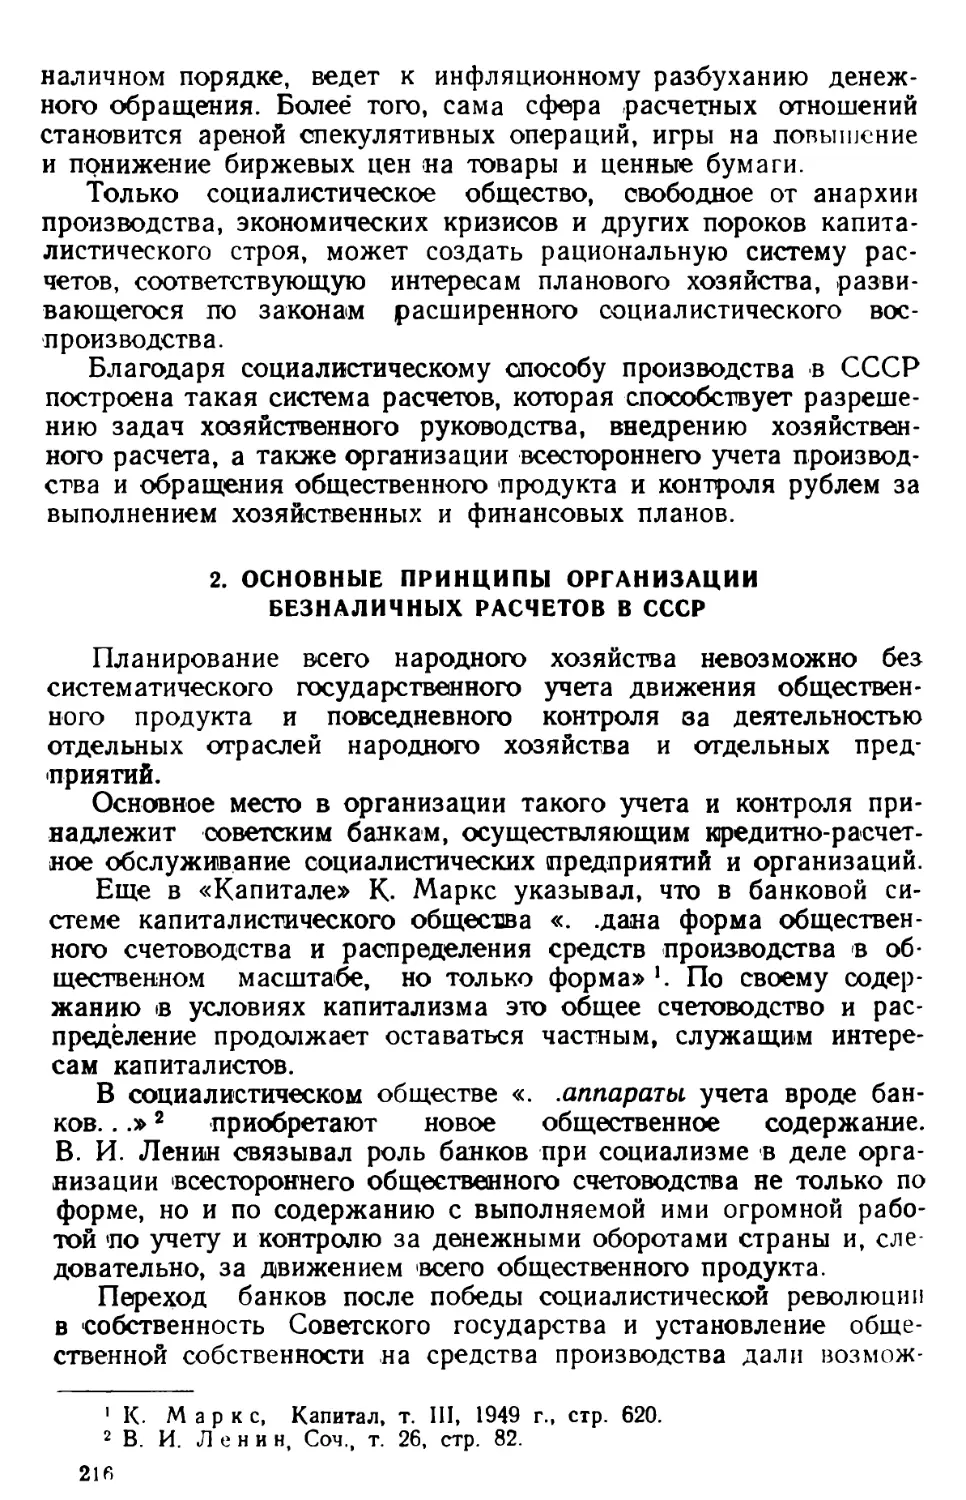 2. Основные принципы организации безналичных расчетов в СССР